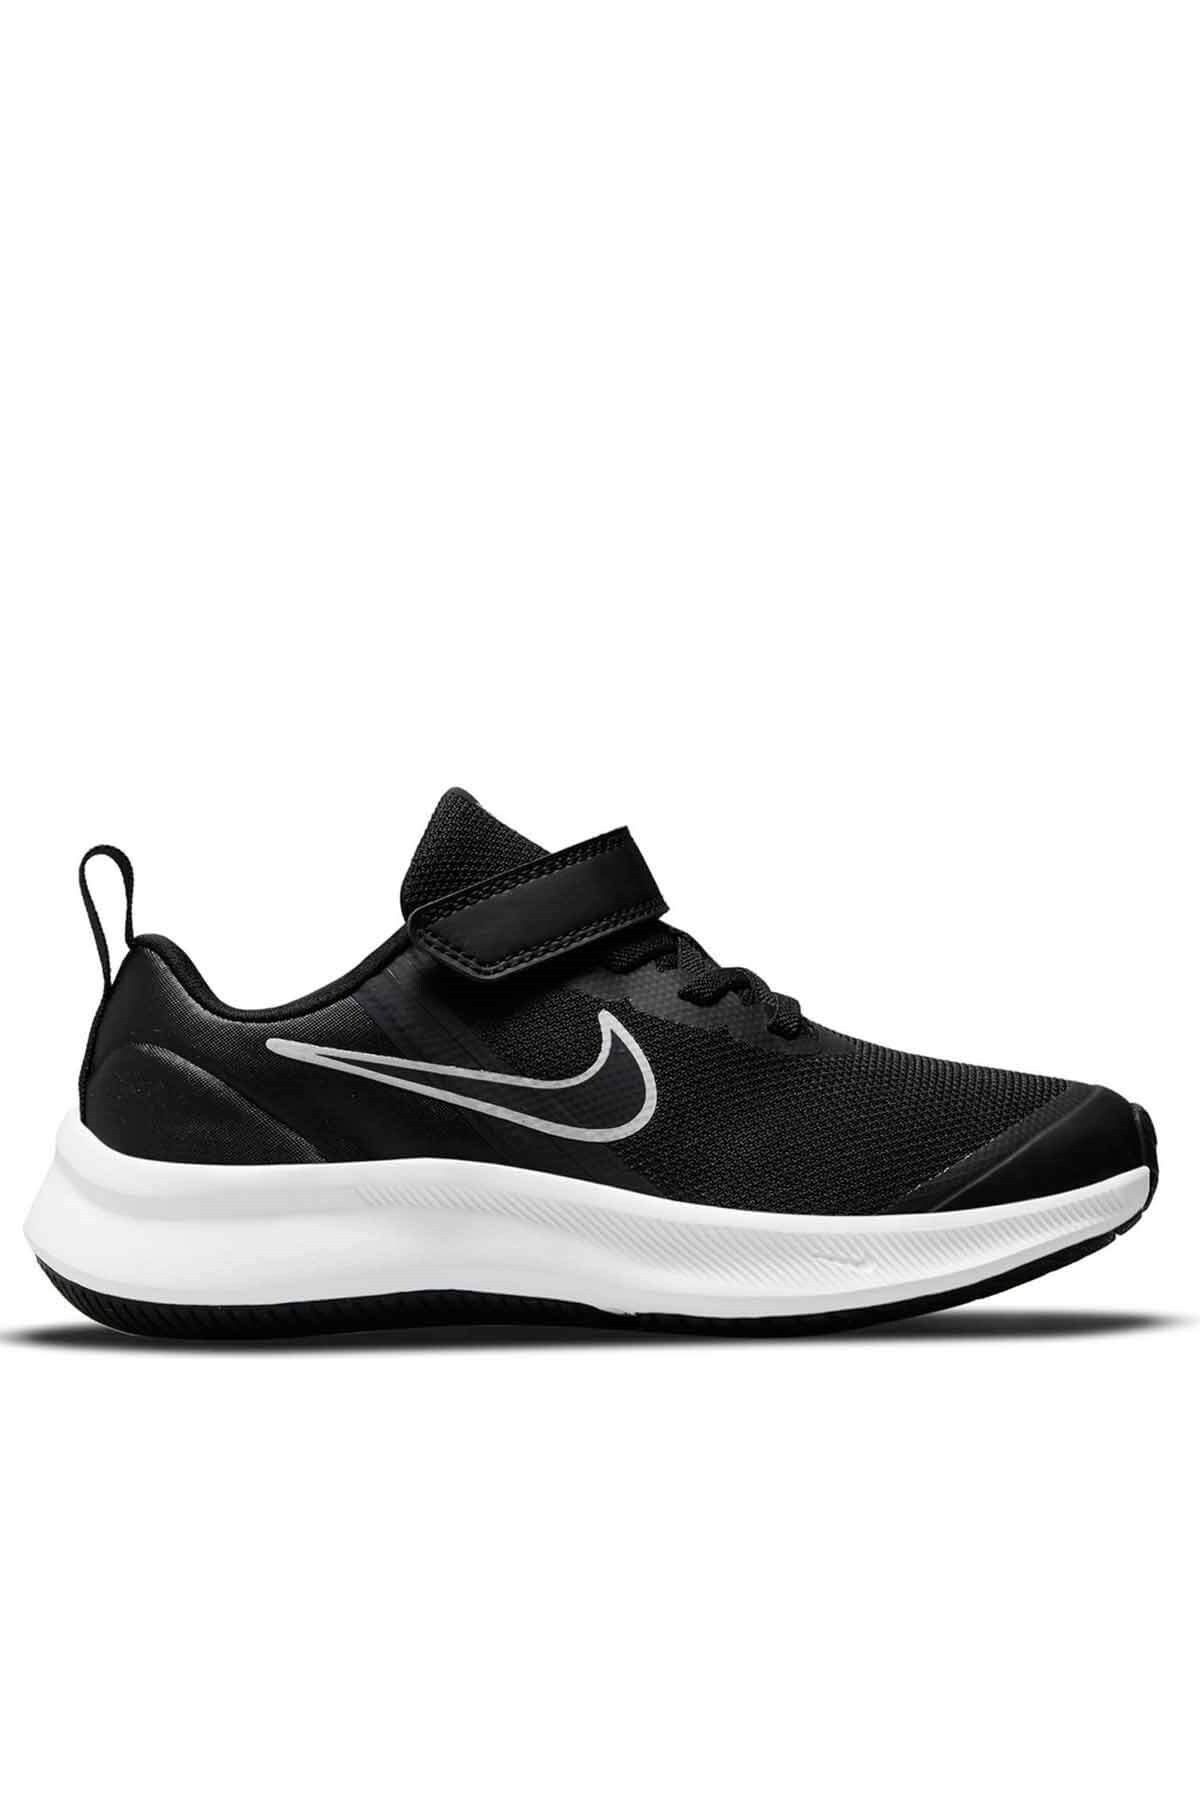 Nike Star Runner 3 (PSV) Çocuk Yürüyüş Koşu Ayakkabı Da2777-003-syhbyz